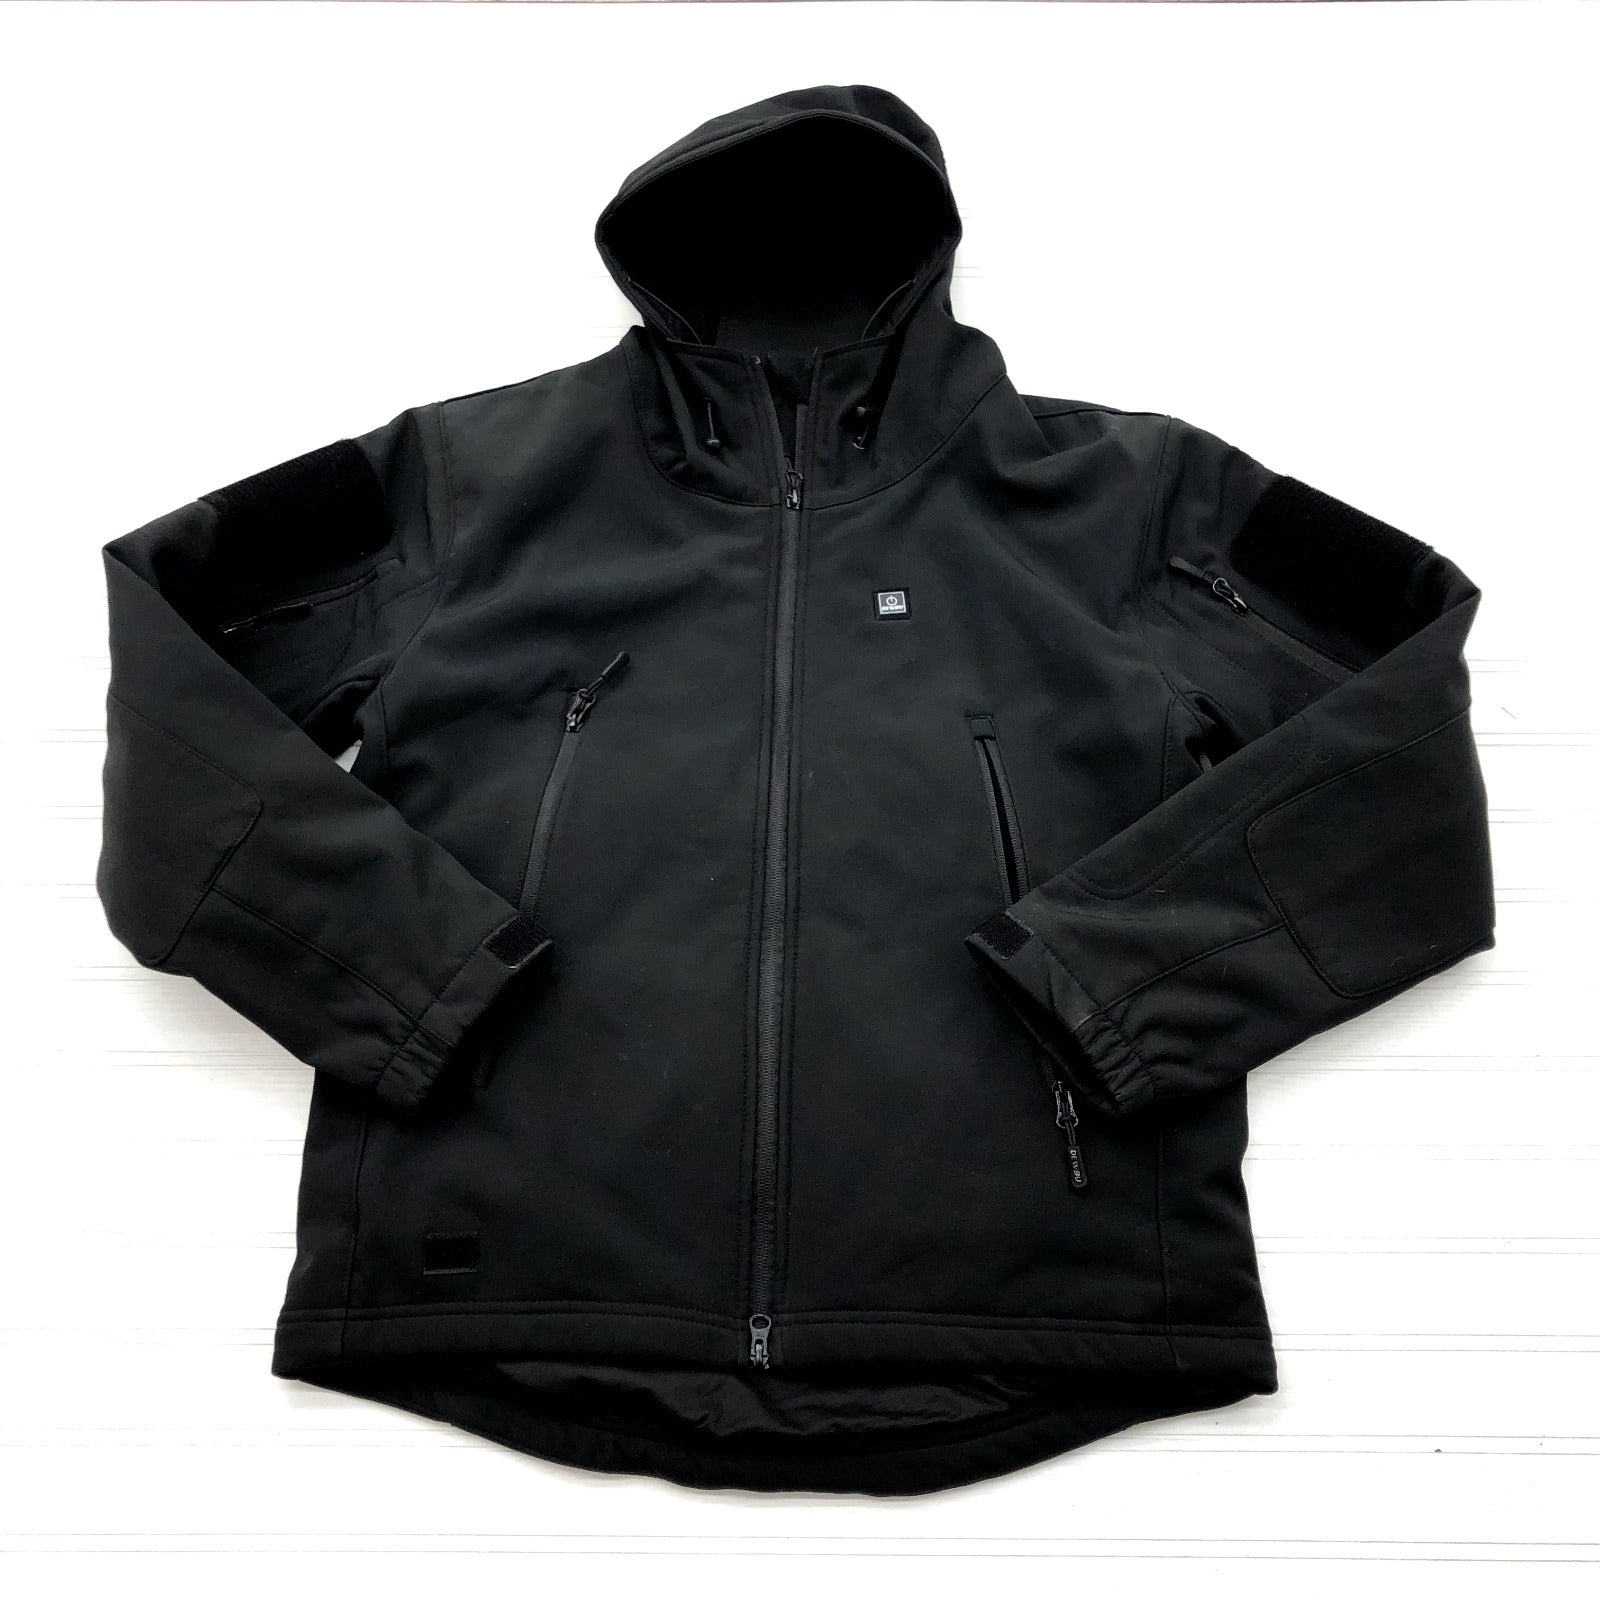 Dewbu Black Plain Full Zip Electronic Heating Softshell Jacket Adult Size S